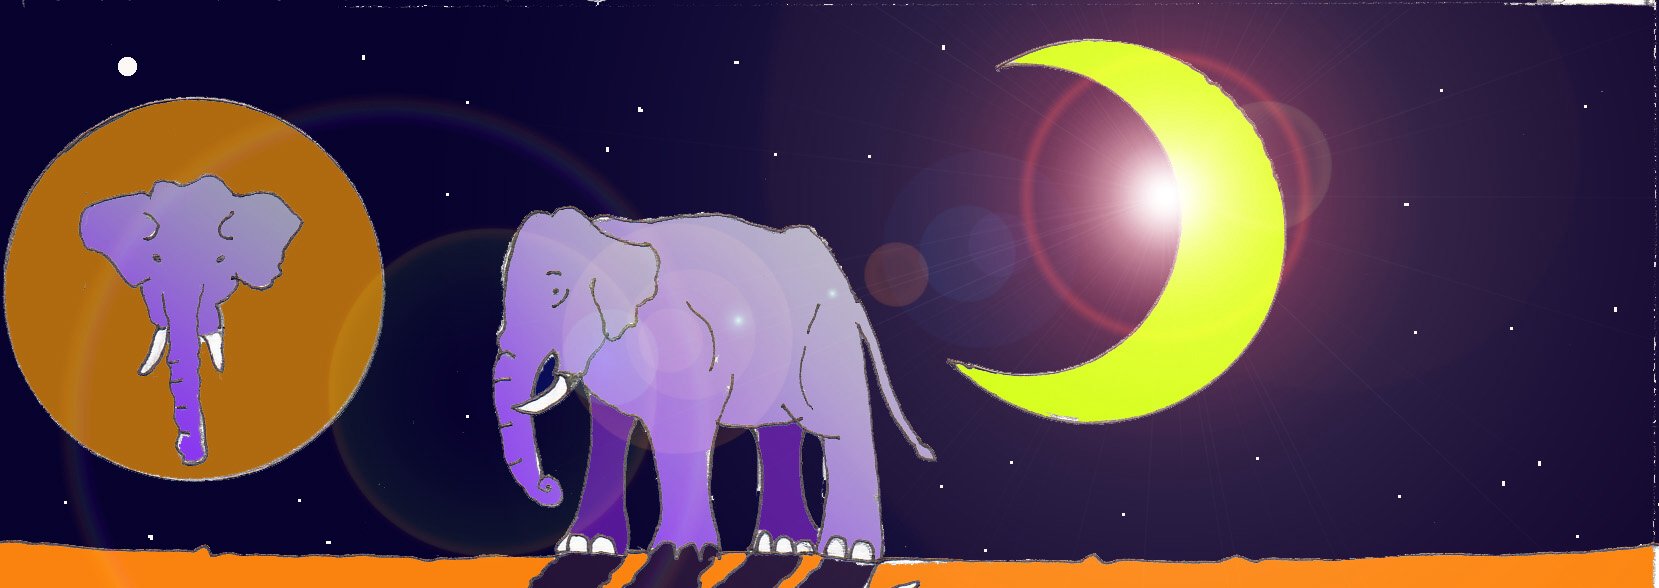 Immagine di un elefante nella notte (Per leggerne la descrizione proseguire nel link). Si vede al centro della scena un elefante di profilo. Sulla sinistra un riquadro con la testa dell'elefante mentre sulla destra campeggia una falce di luna. Sullo sfondo il cielo è notturno e stellato.